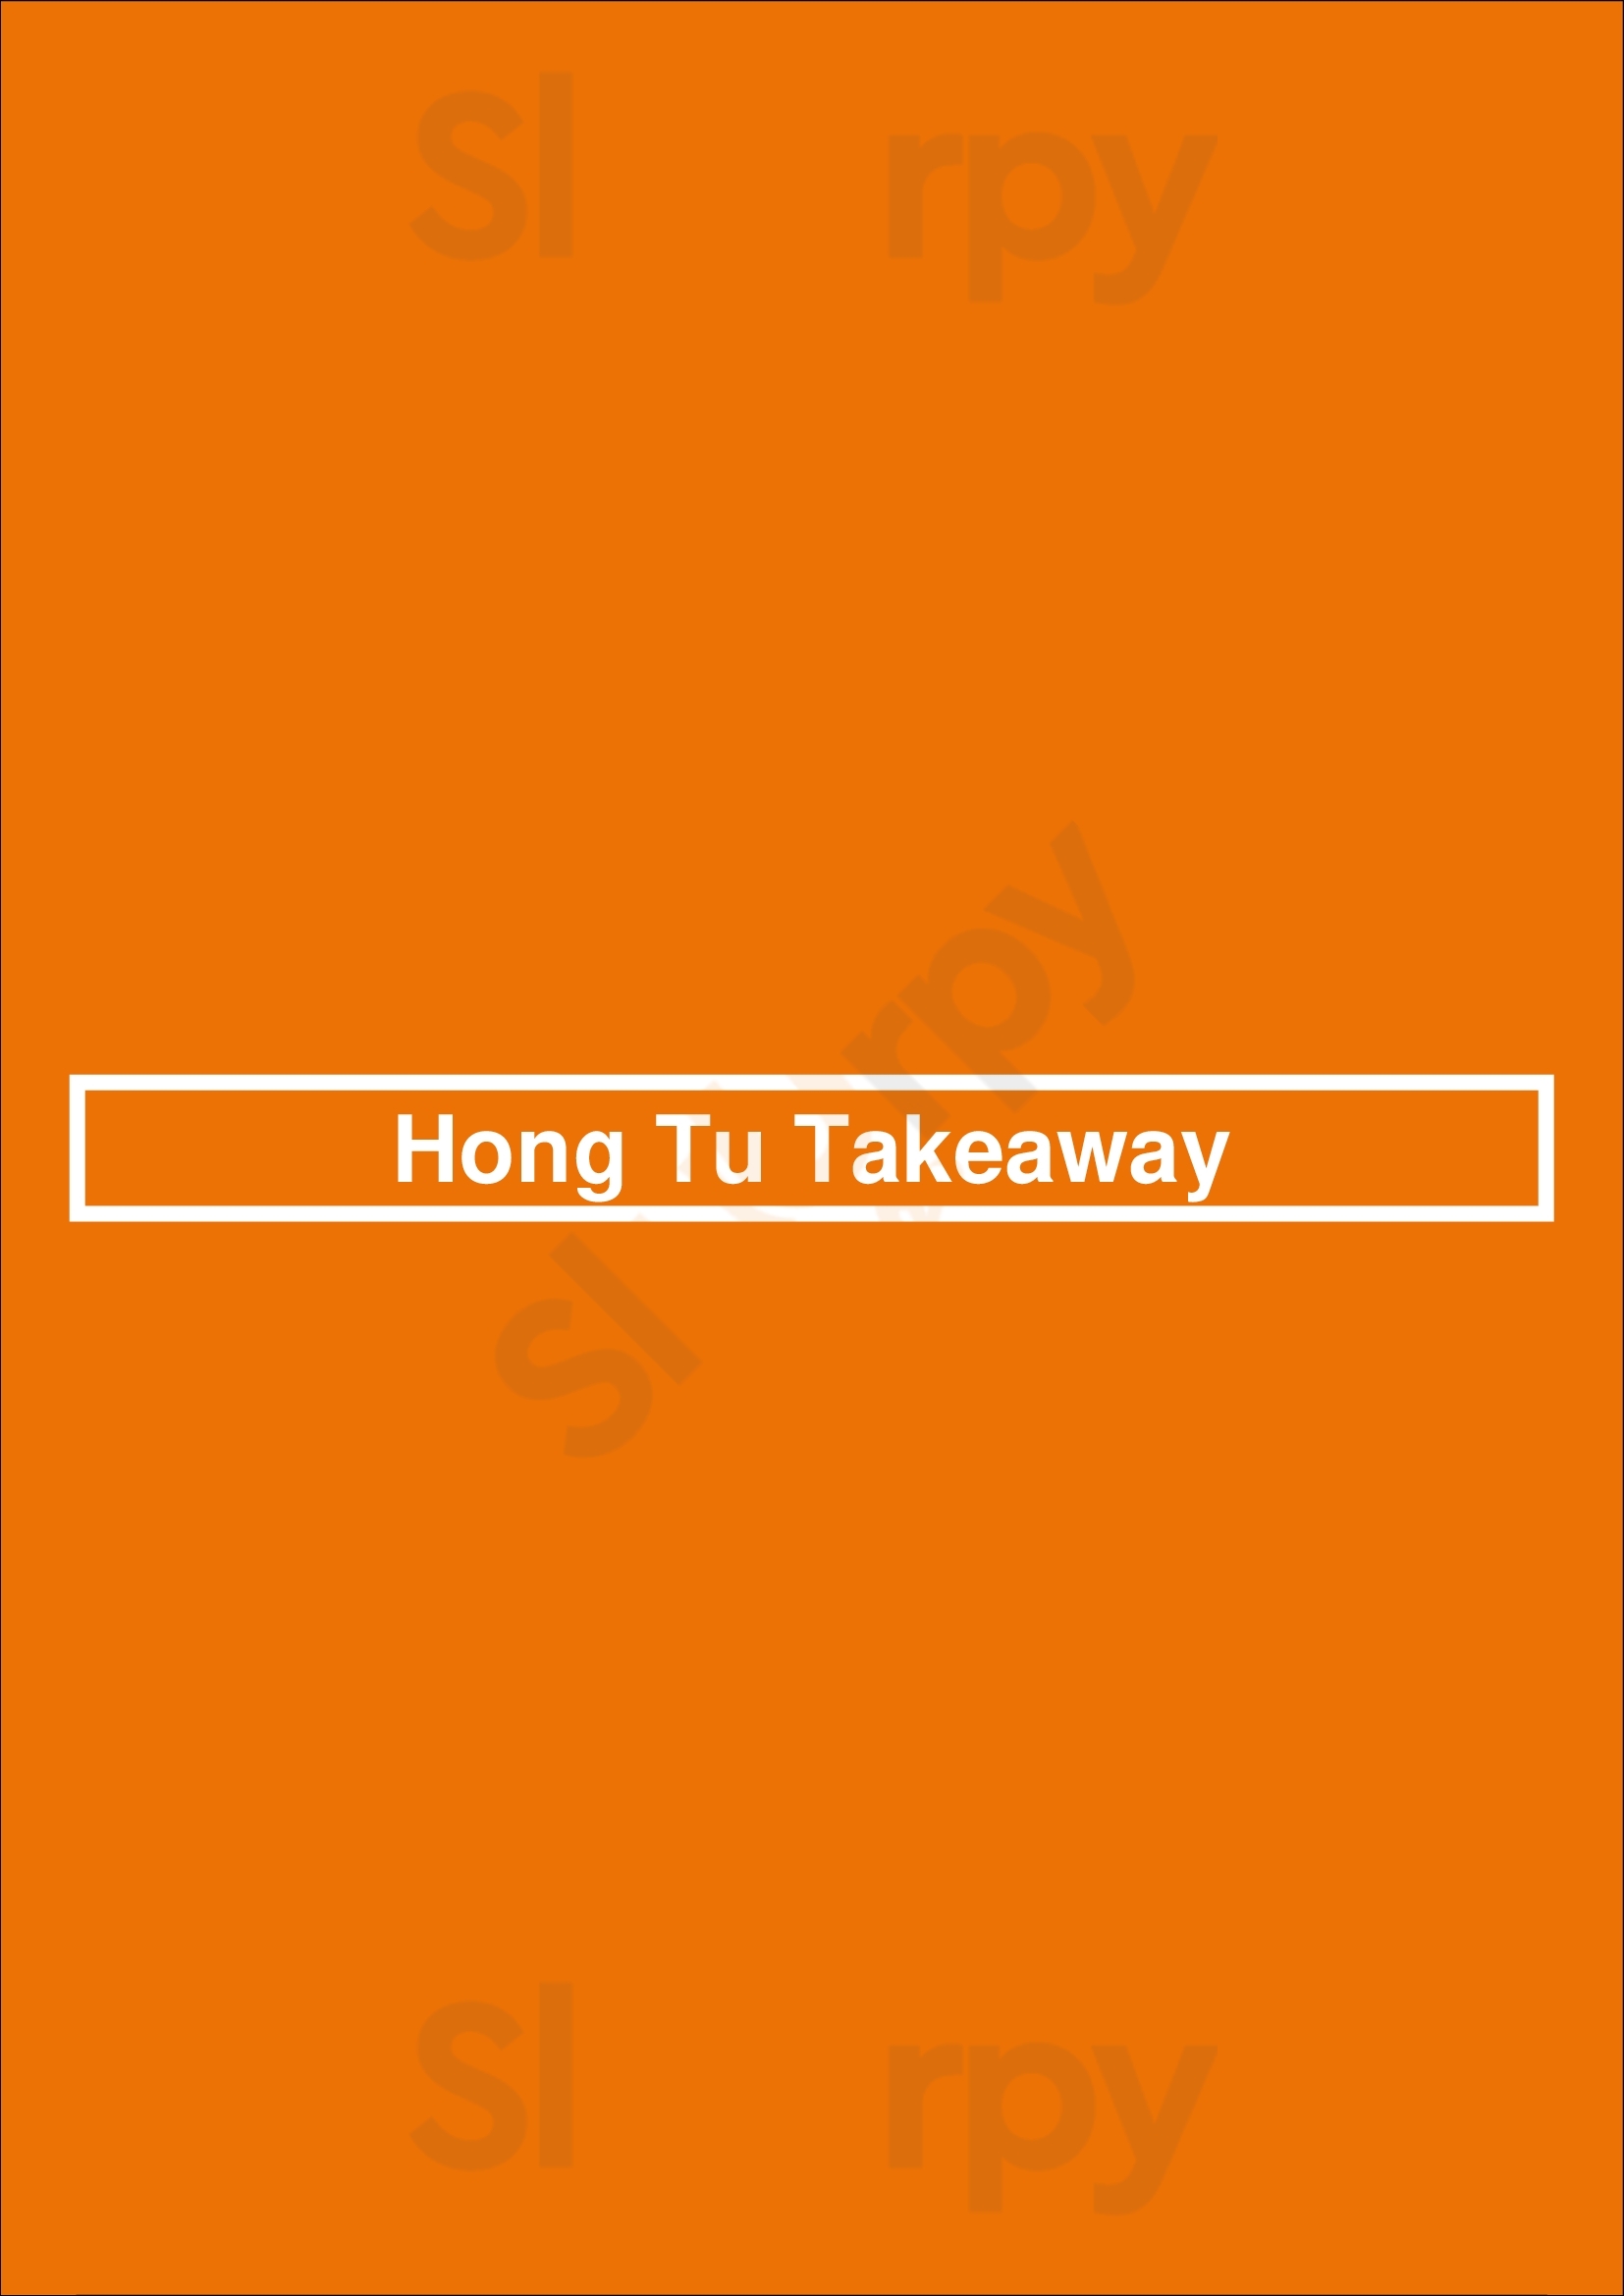 Hong Tu Takeaway Darlington Menu - 1